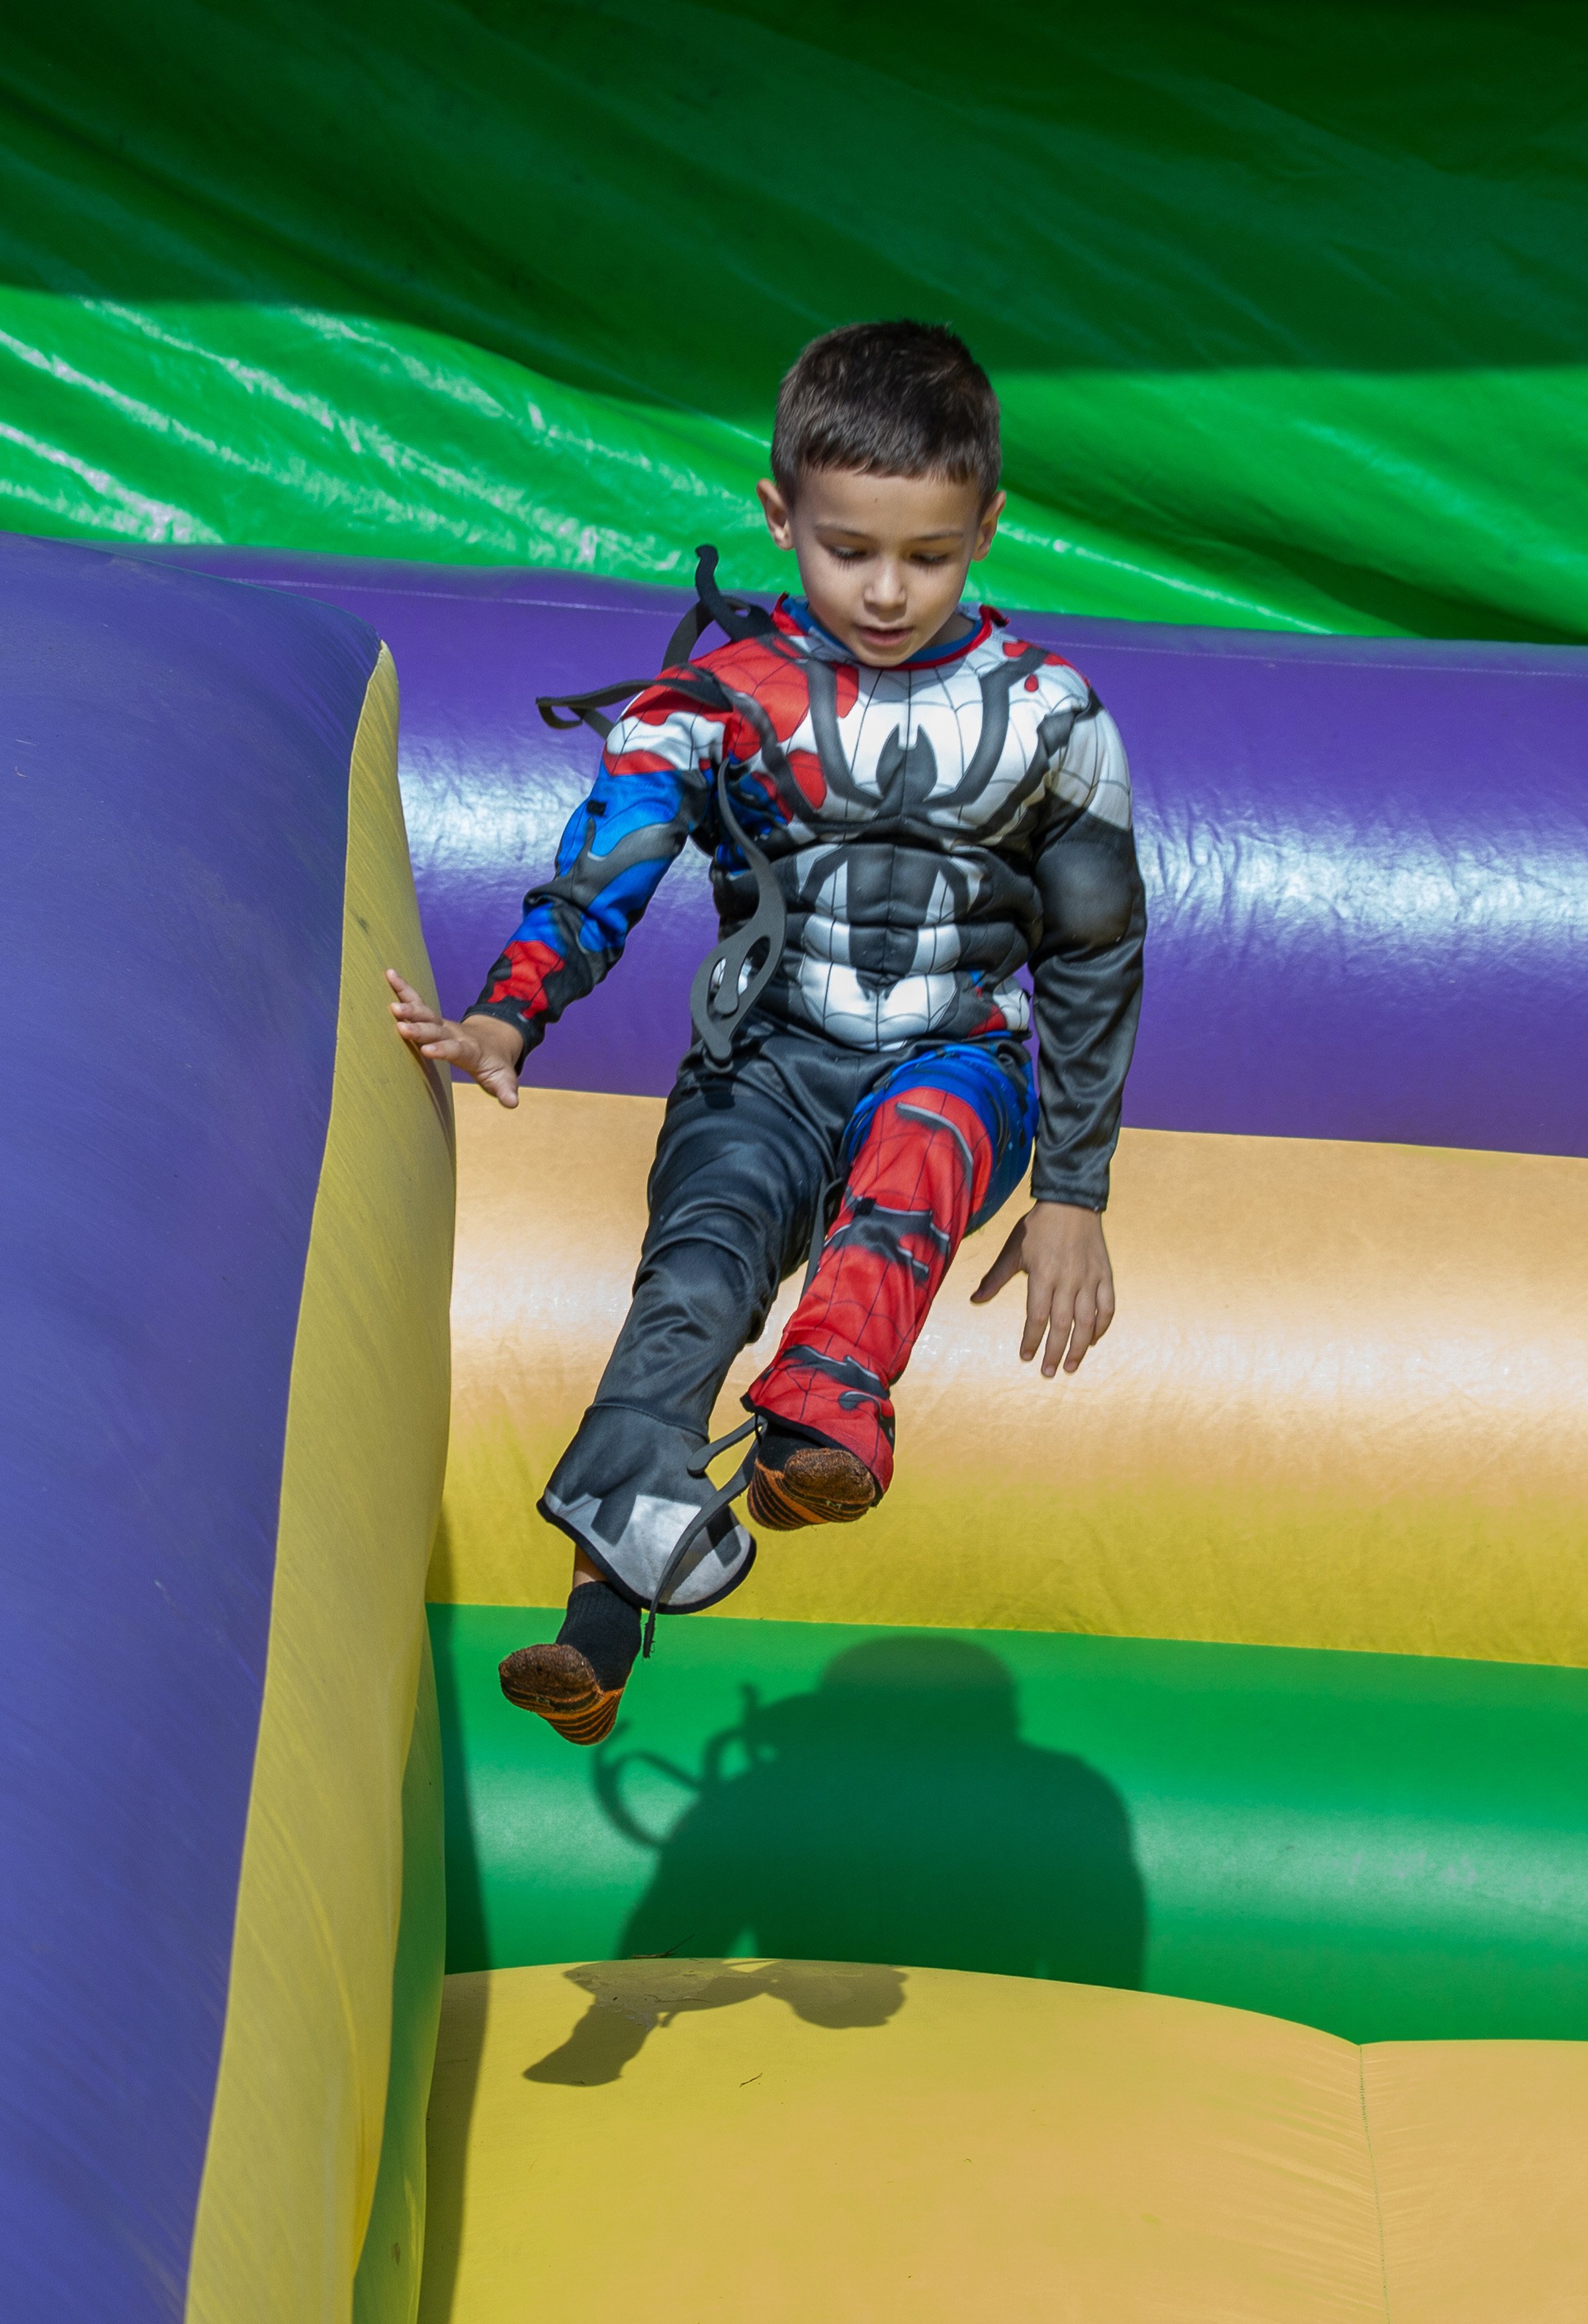 Spiderman Jumping on Inflatable Slide.jpg